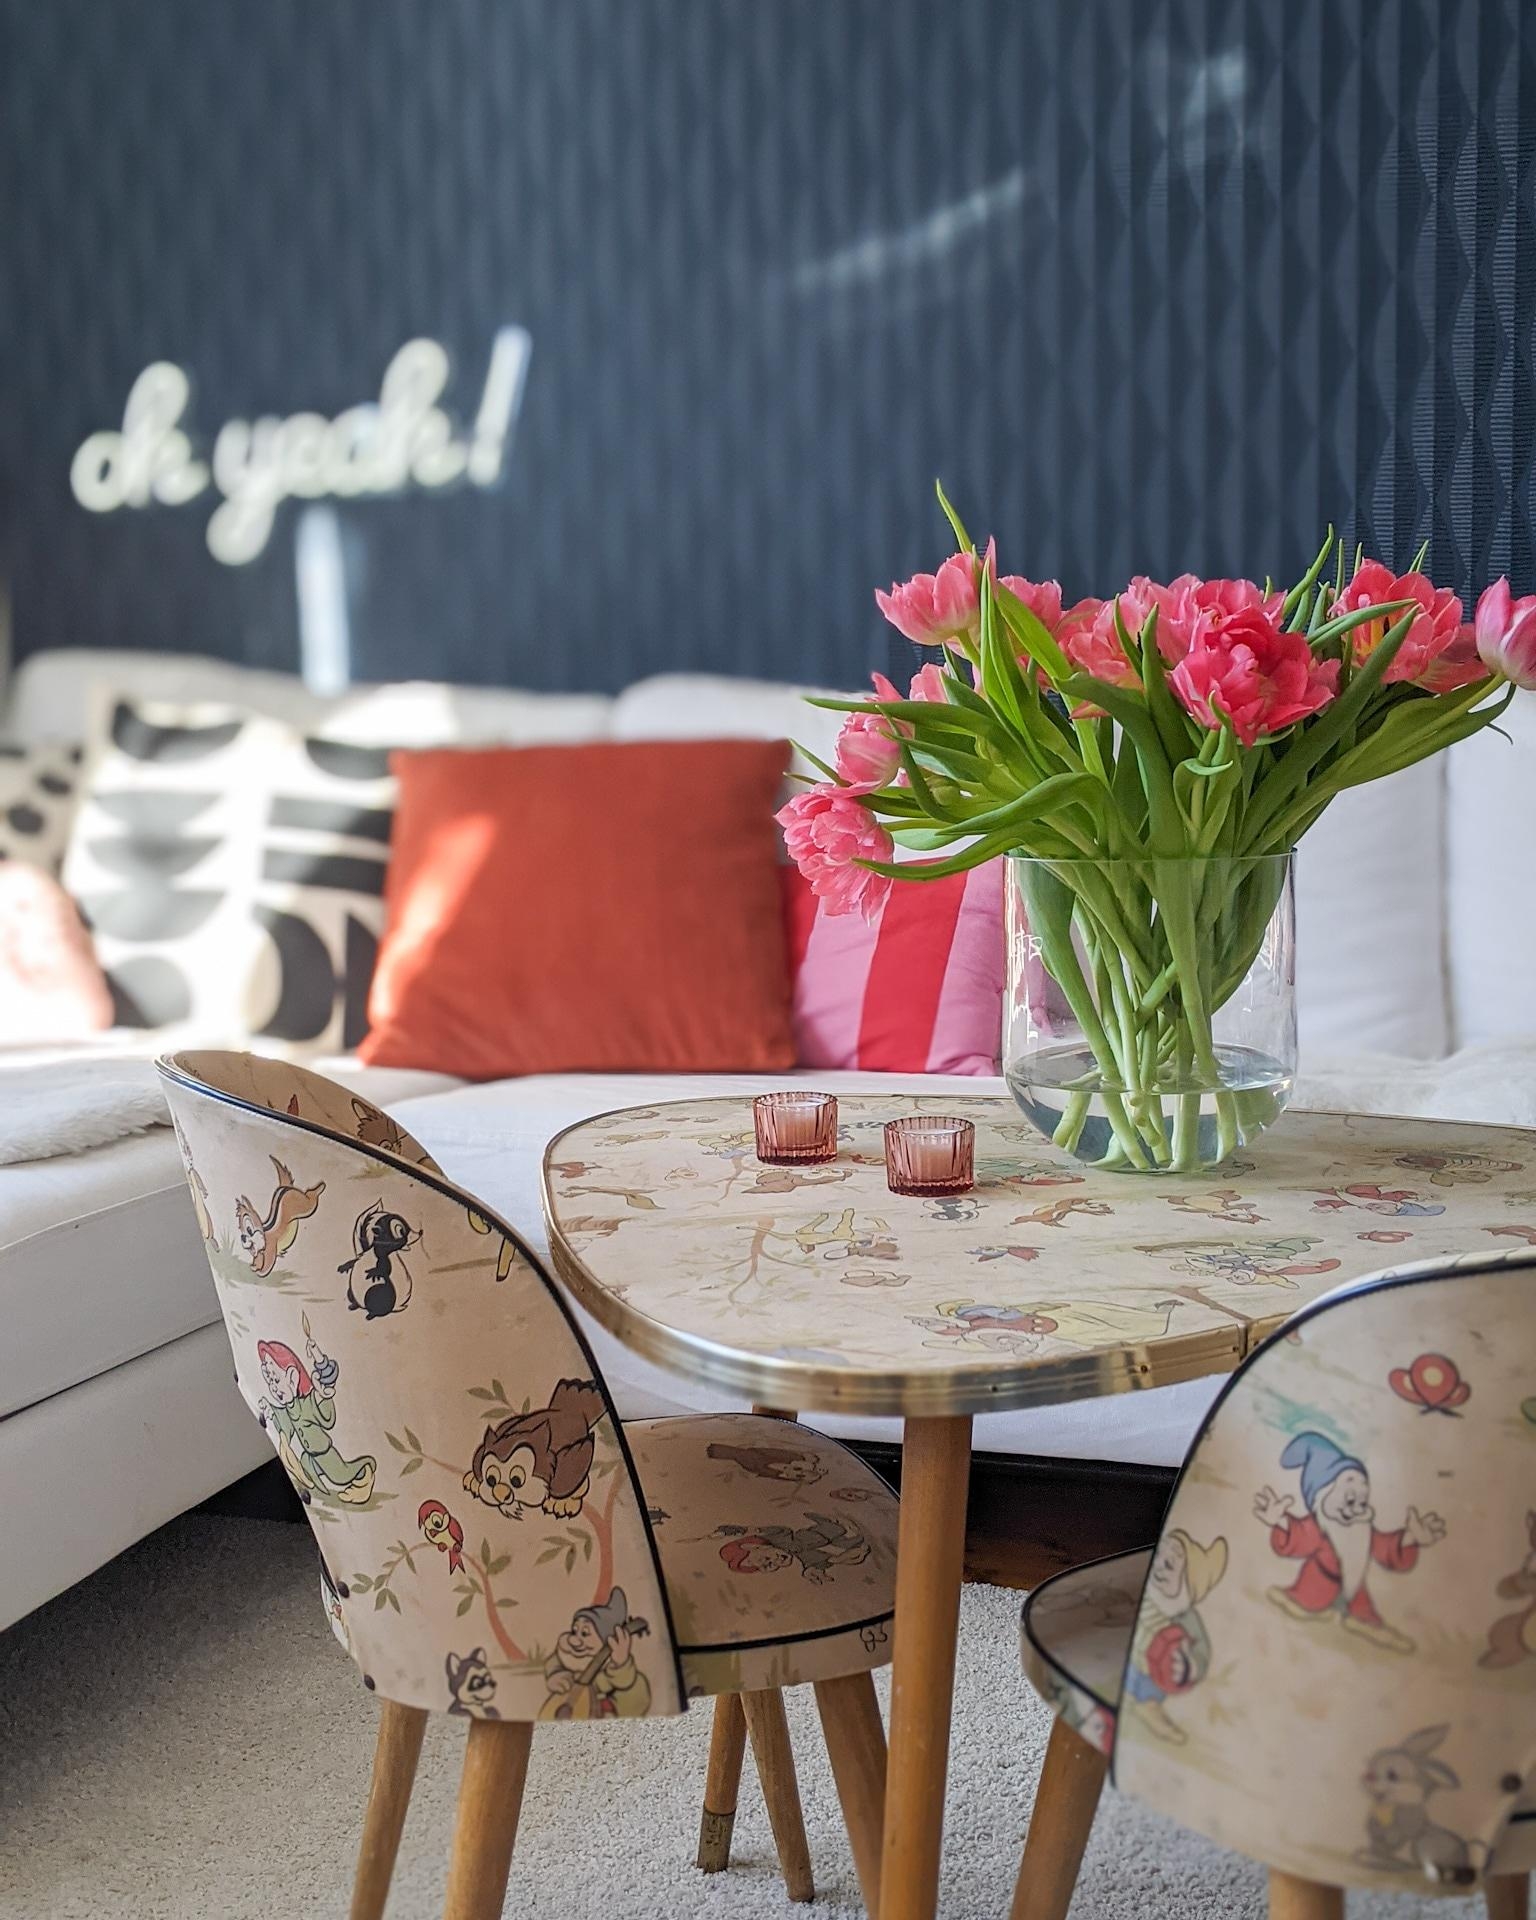 Schönes Wochenende

#sonne #tulpen #couch #farbe #bunt 